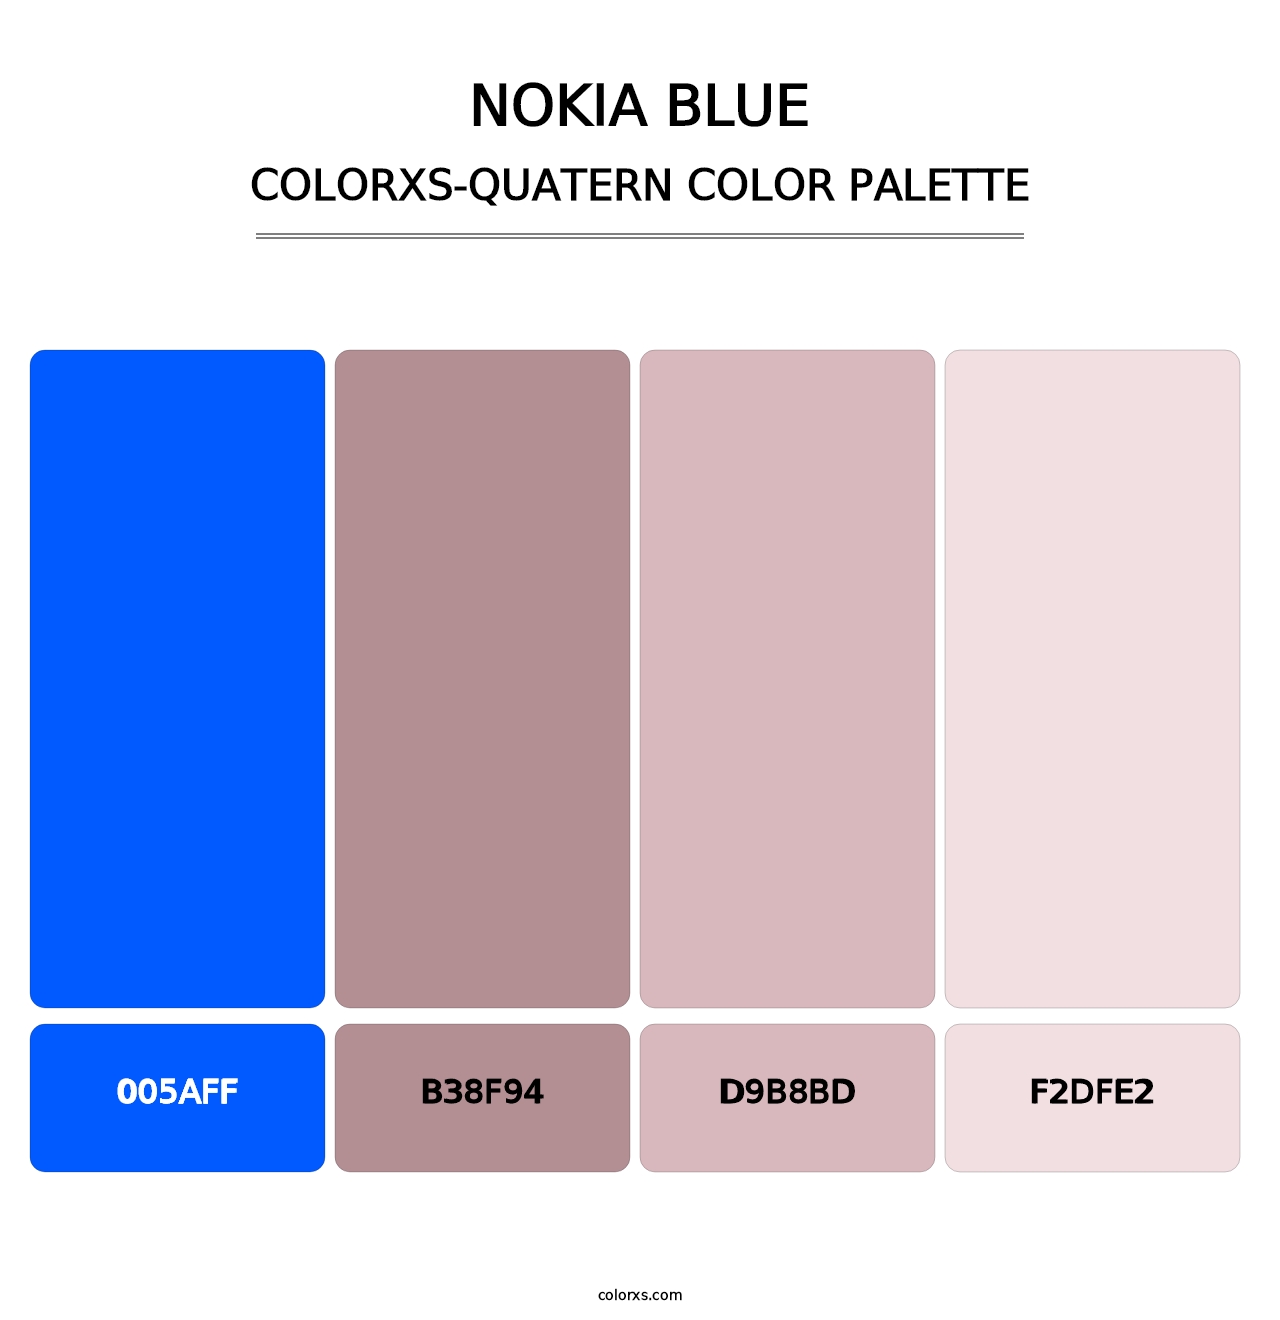 Nokia Blue - Colorxs Quatern Palette